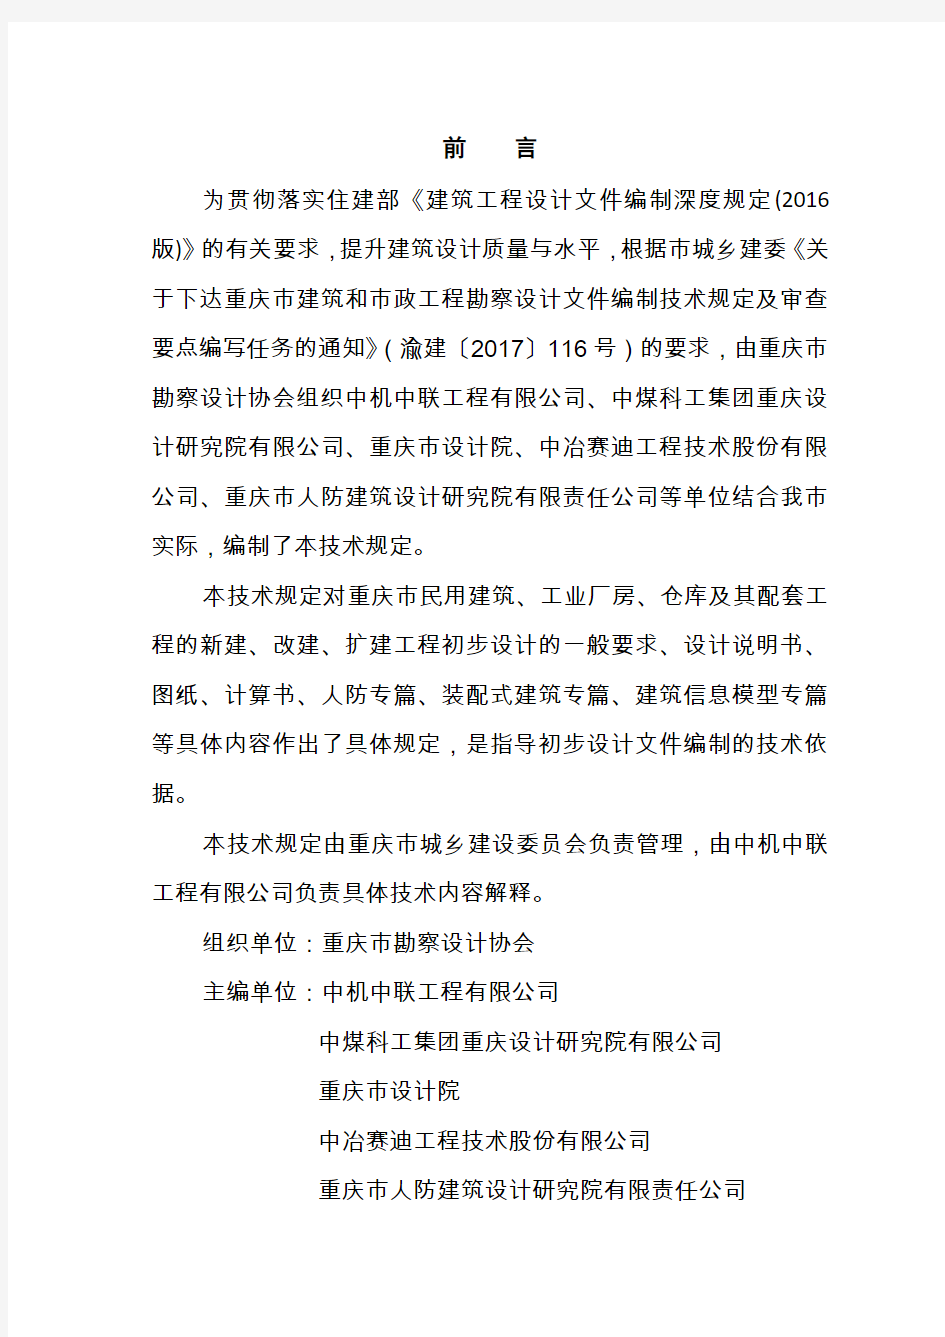 (建筑工程设计)重庆市建筑工程初步设计文件编制技术规定(报批稿2017)